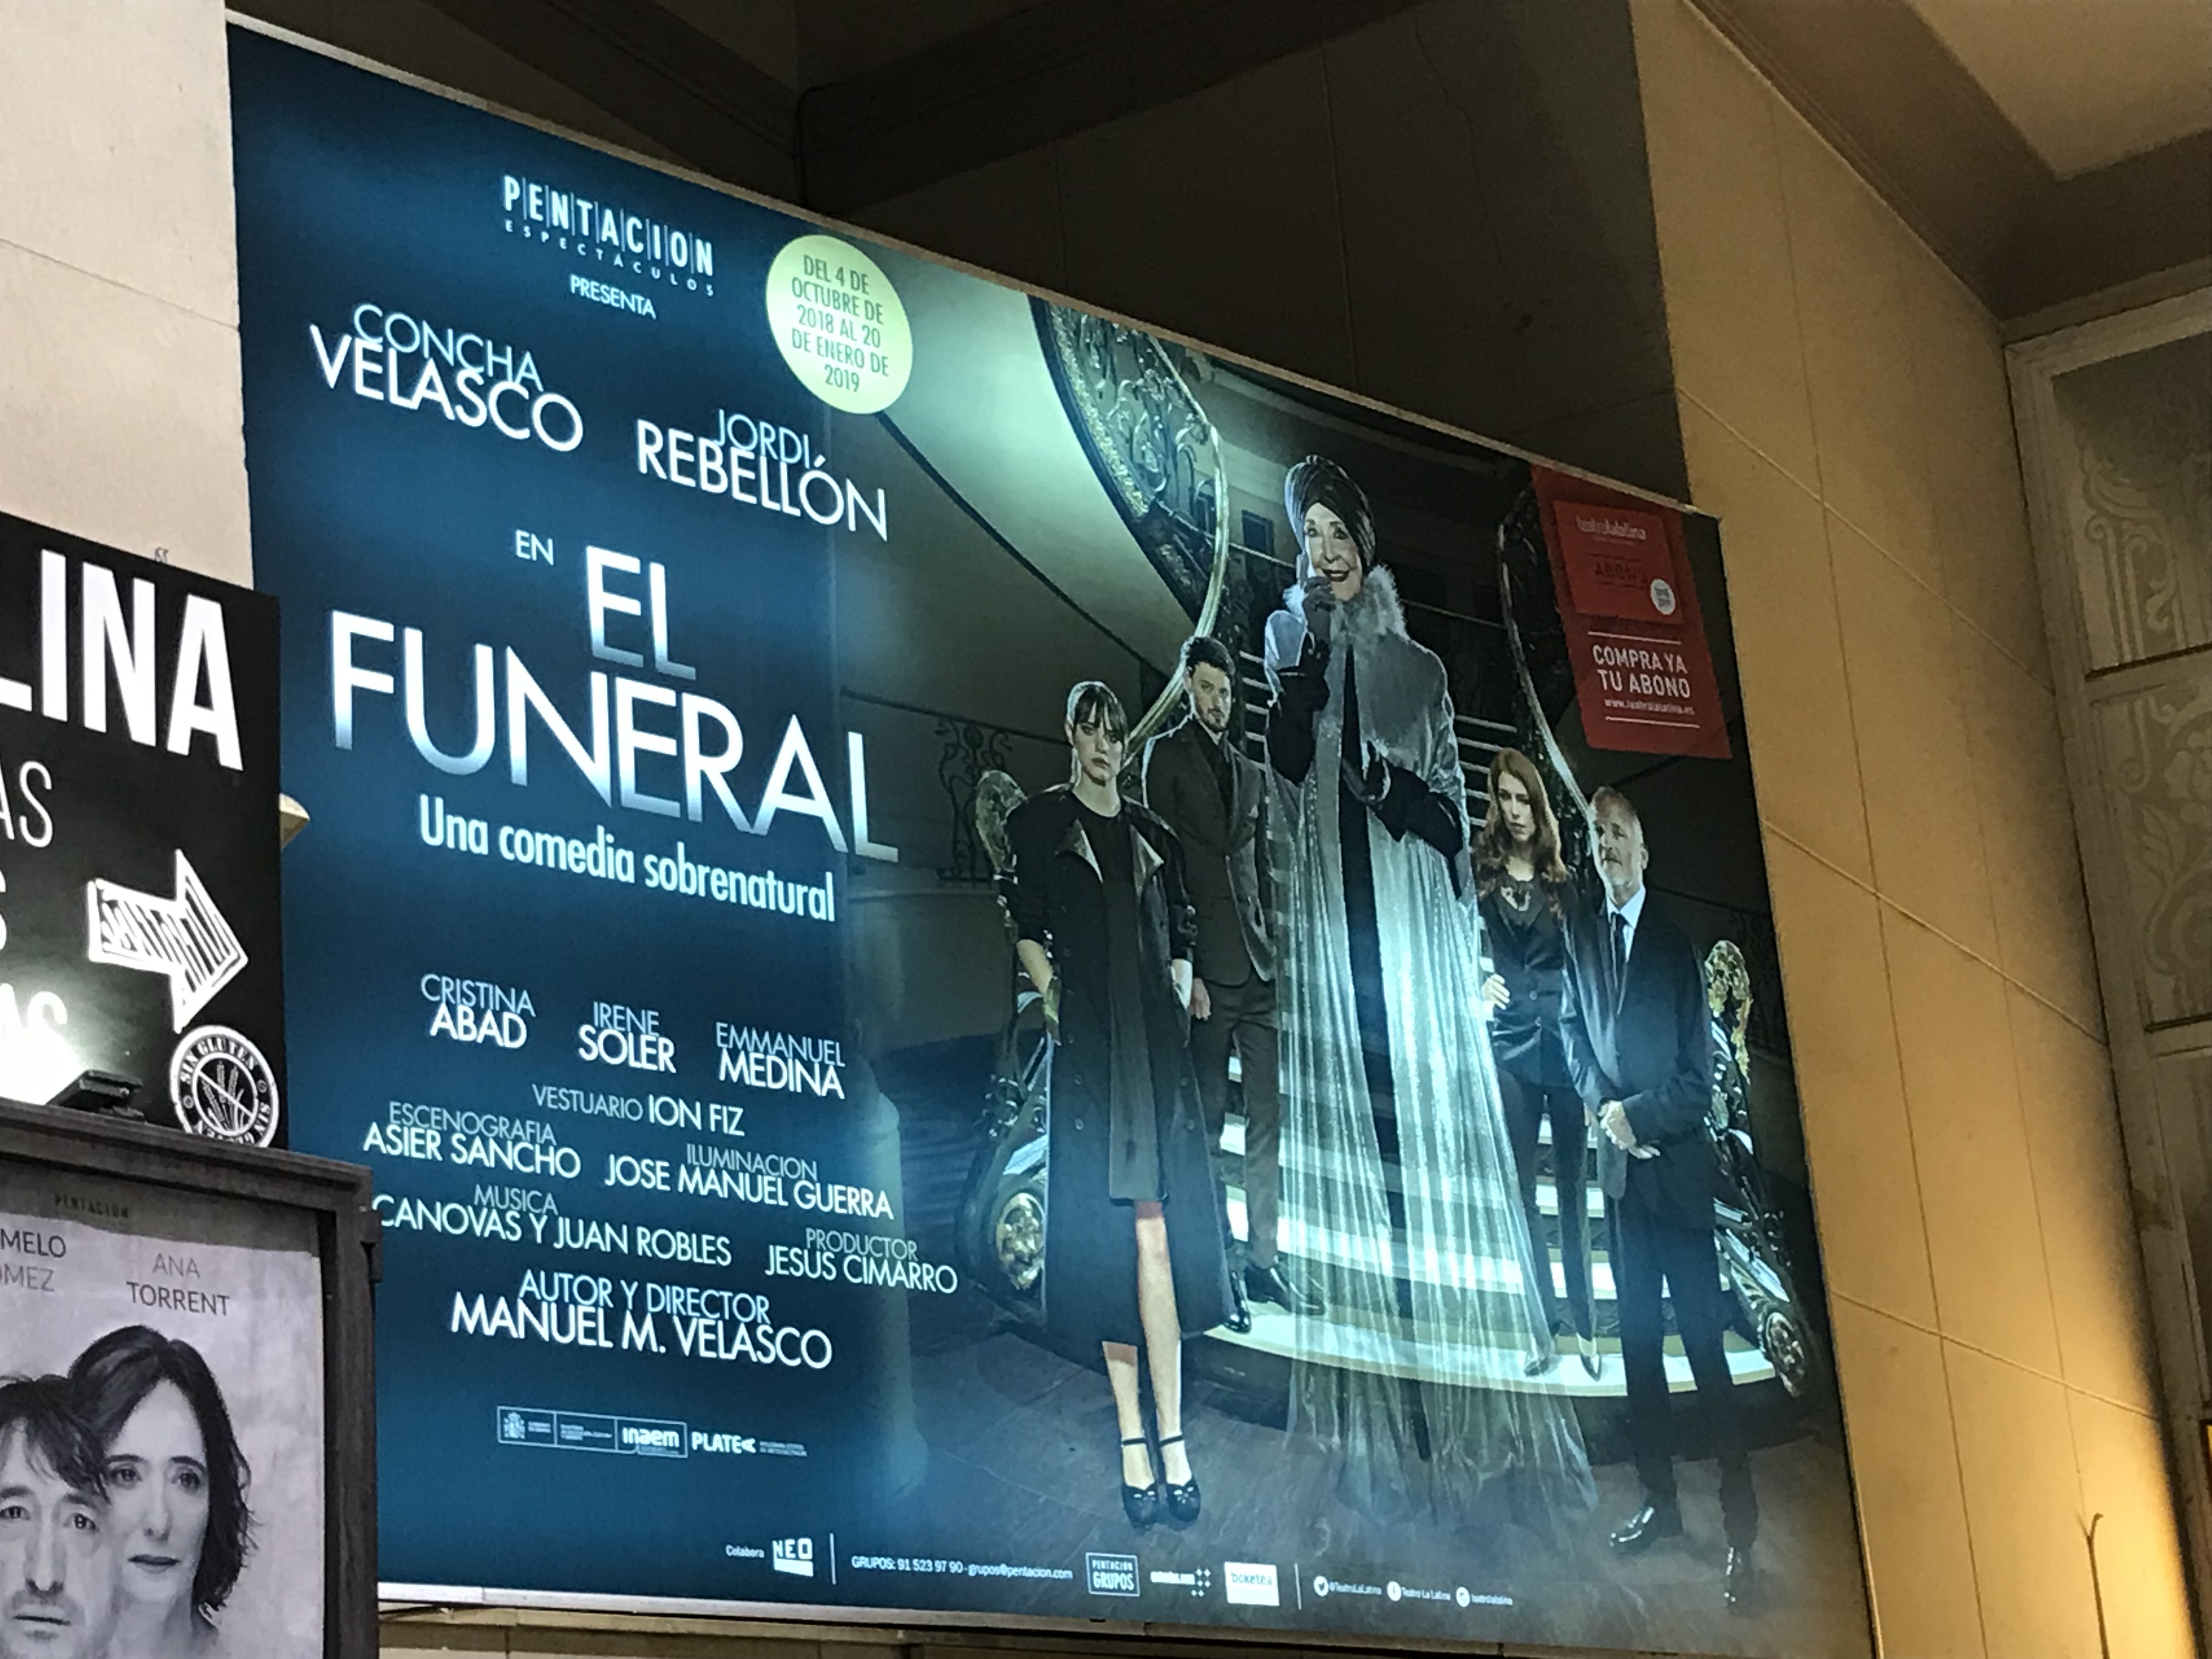 'El Funeral' play